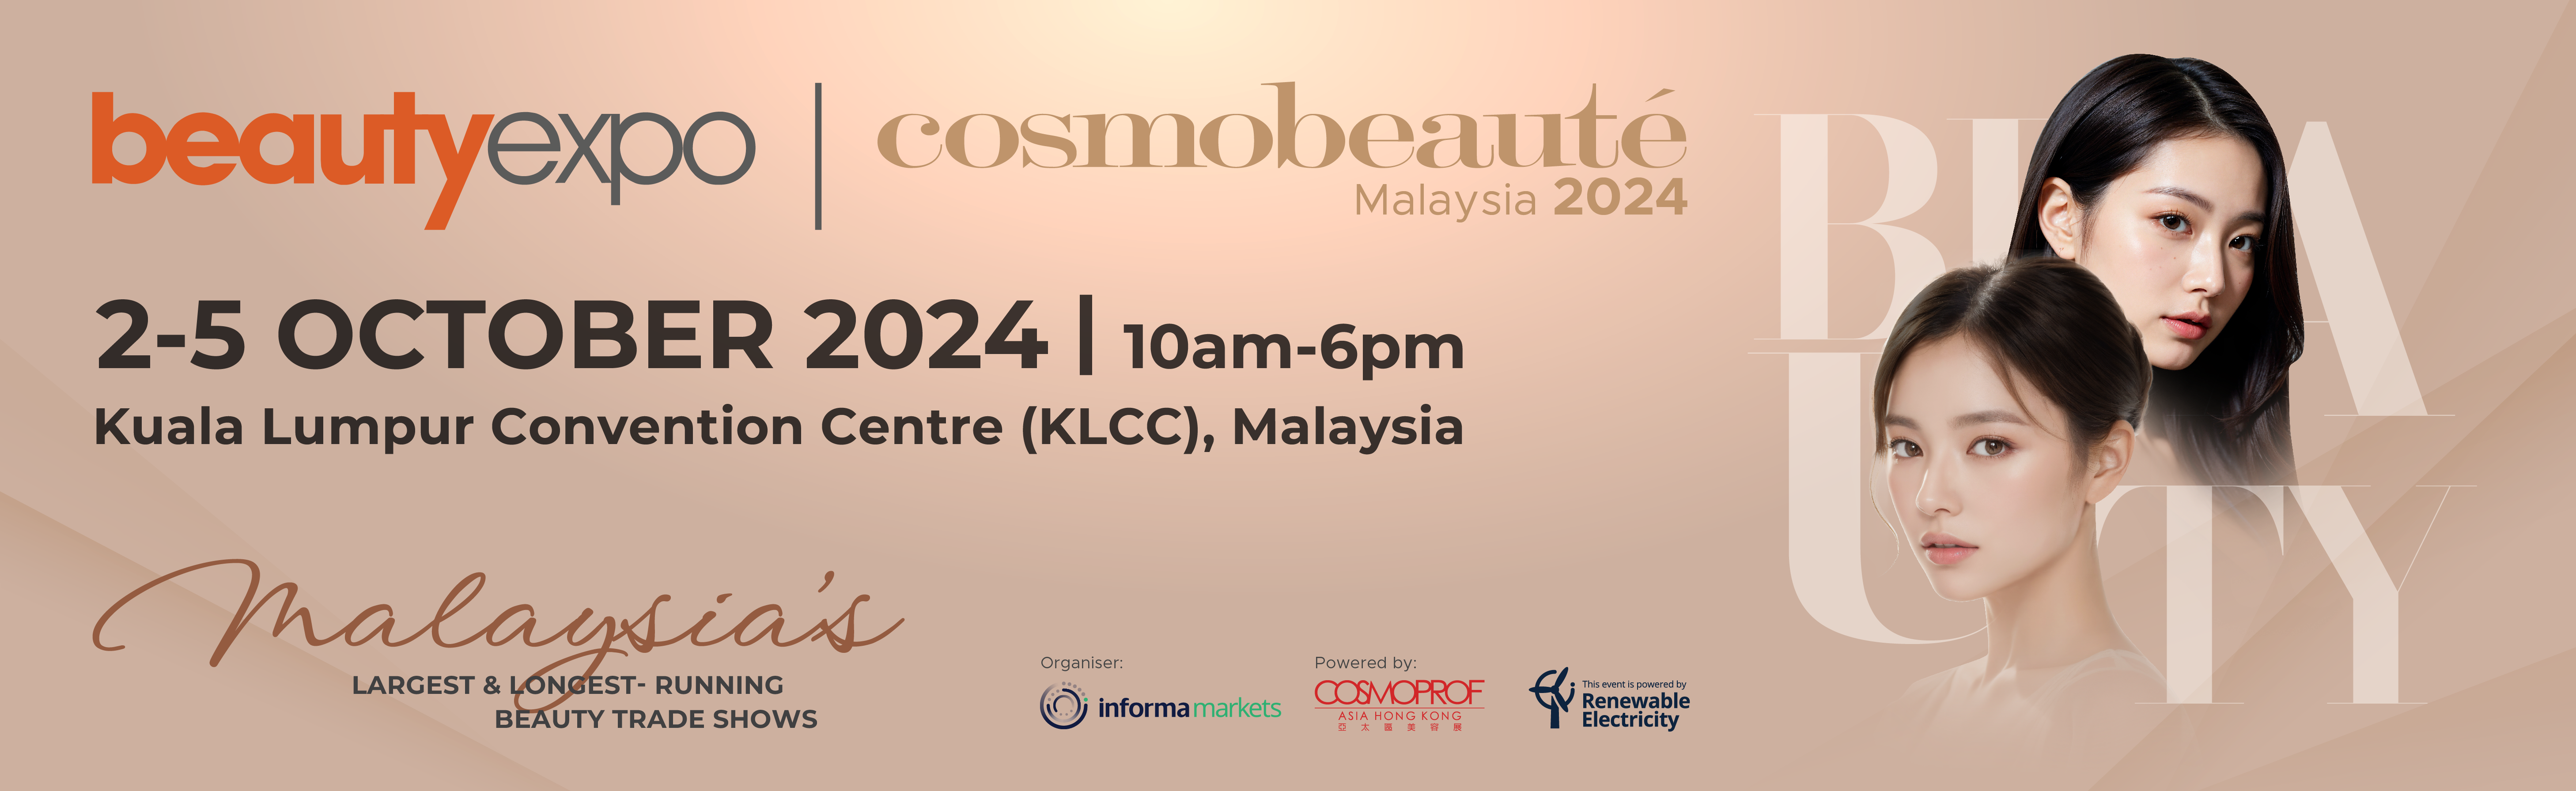 beautyexpo & Cosmobeauté Malaysia 2024, 2 - 5 October